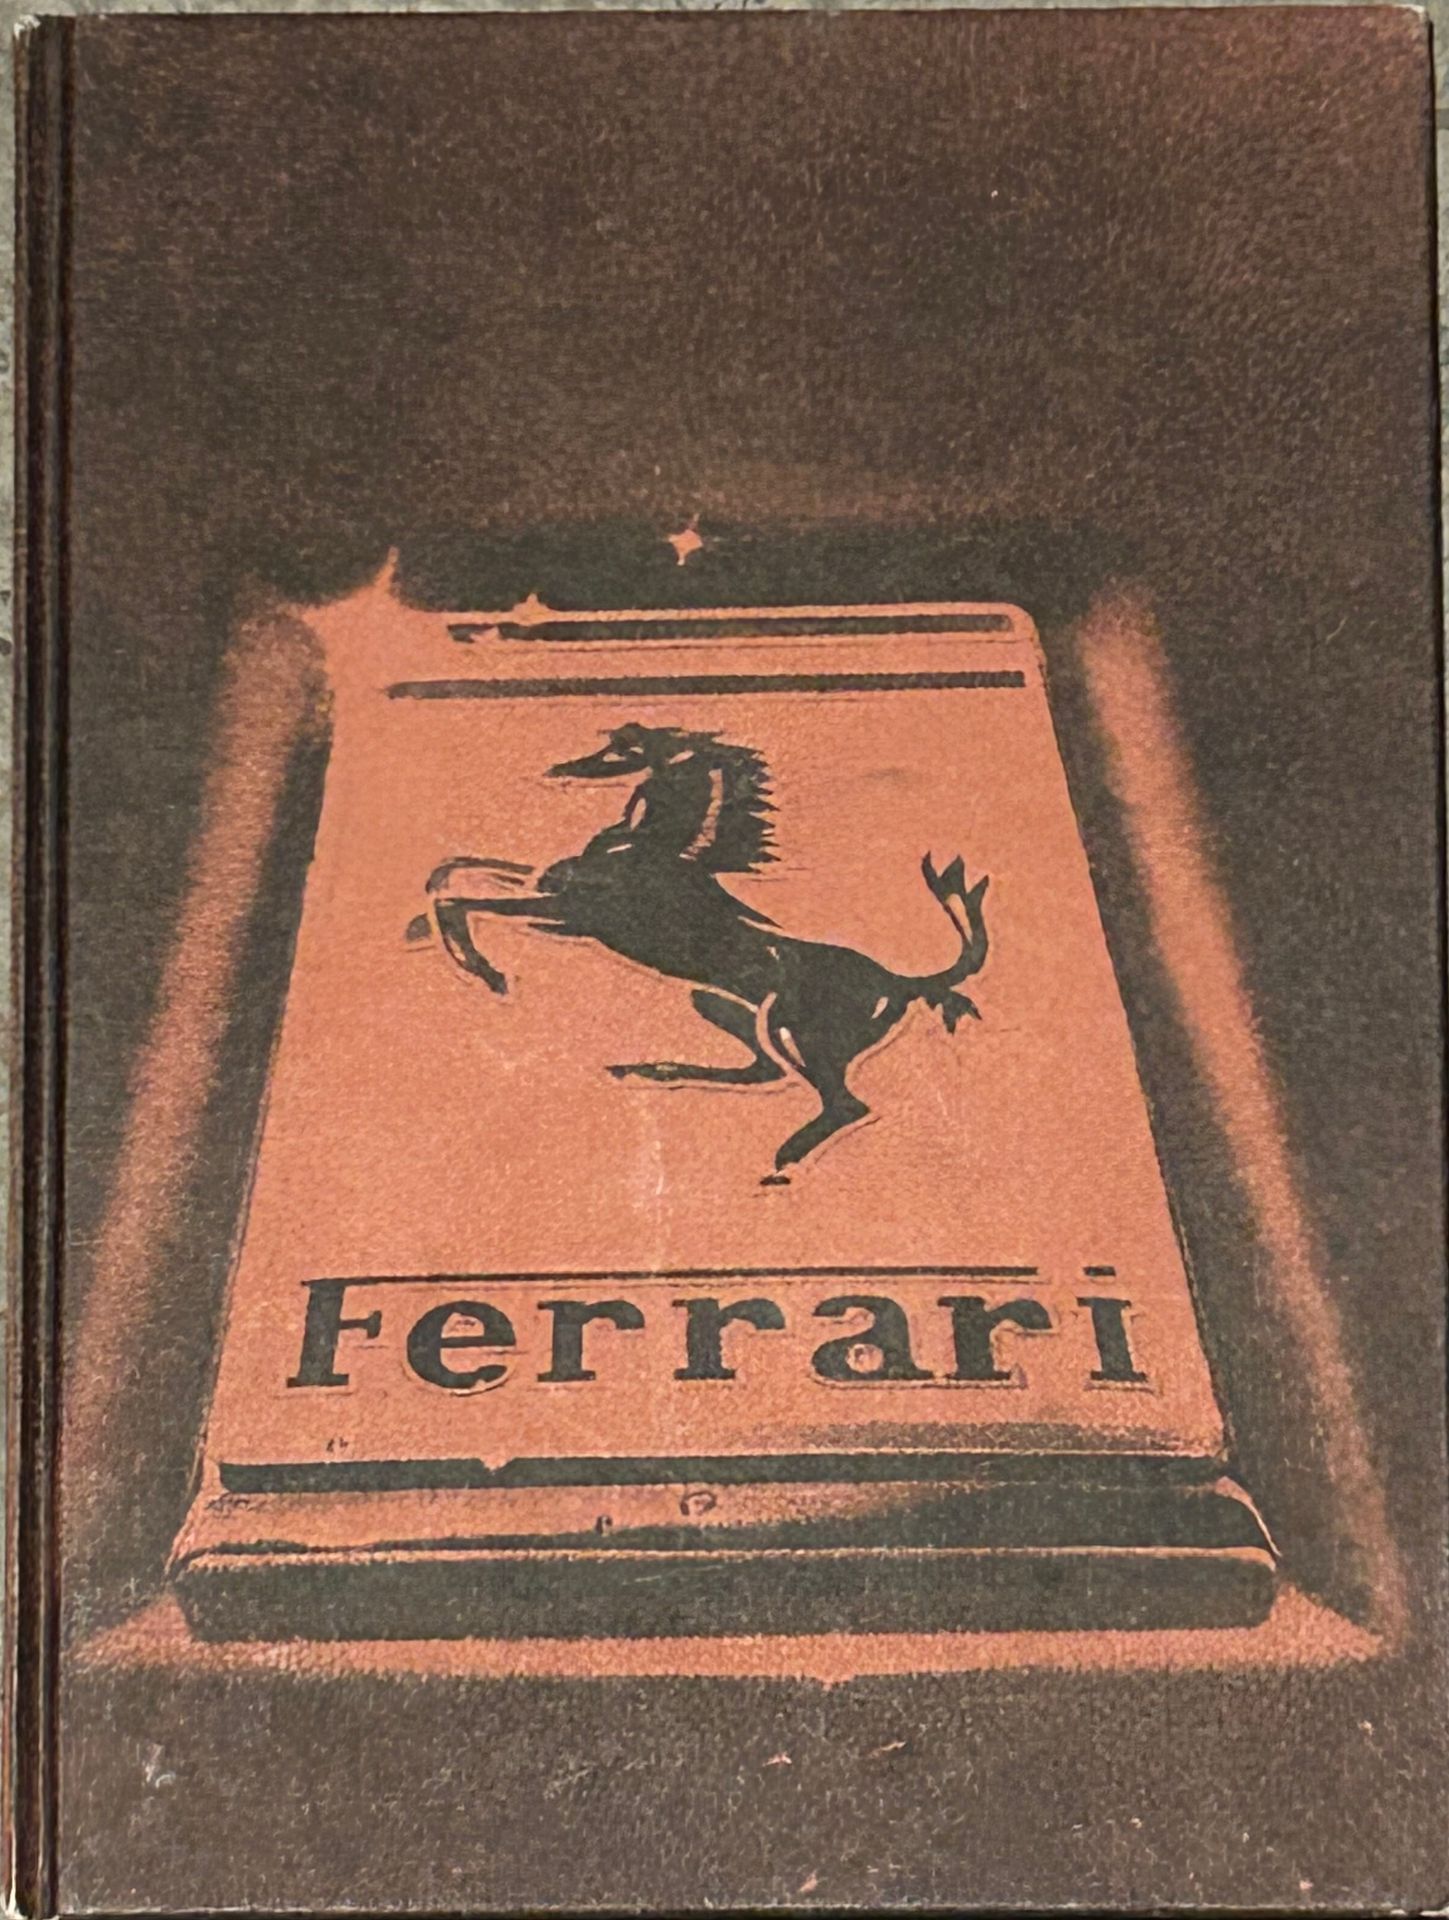 FERRARI FERRARI
Livre sur la marque par Godfrey Eaton
Préface par Jodi Scheckter&hellip;